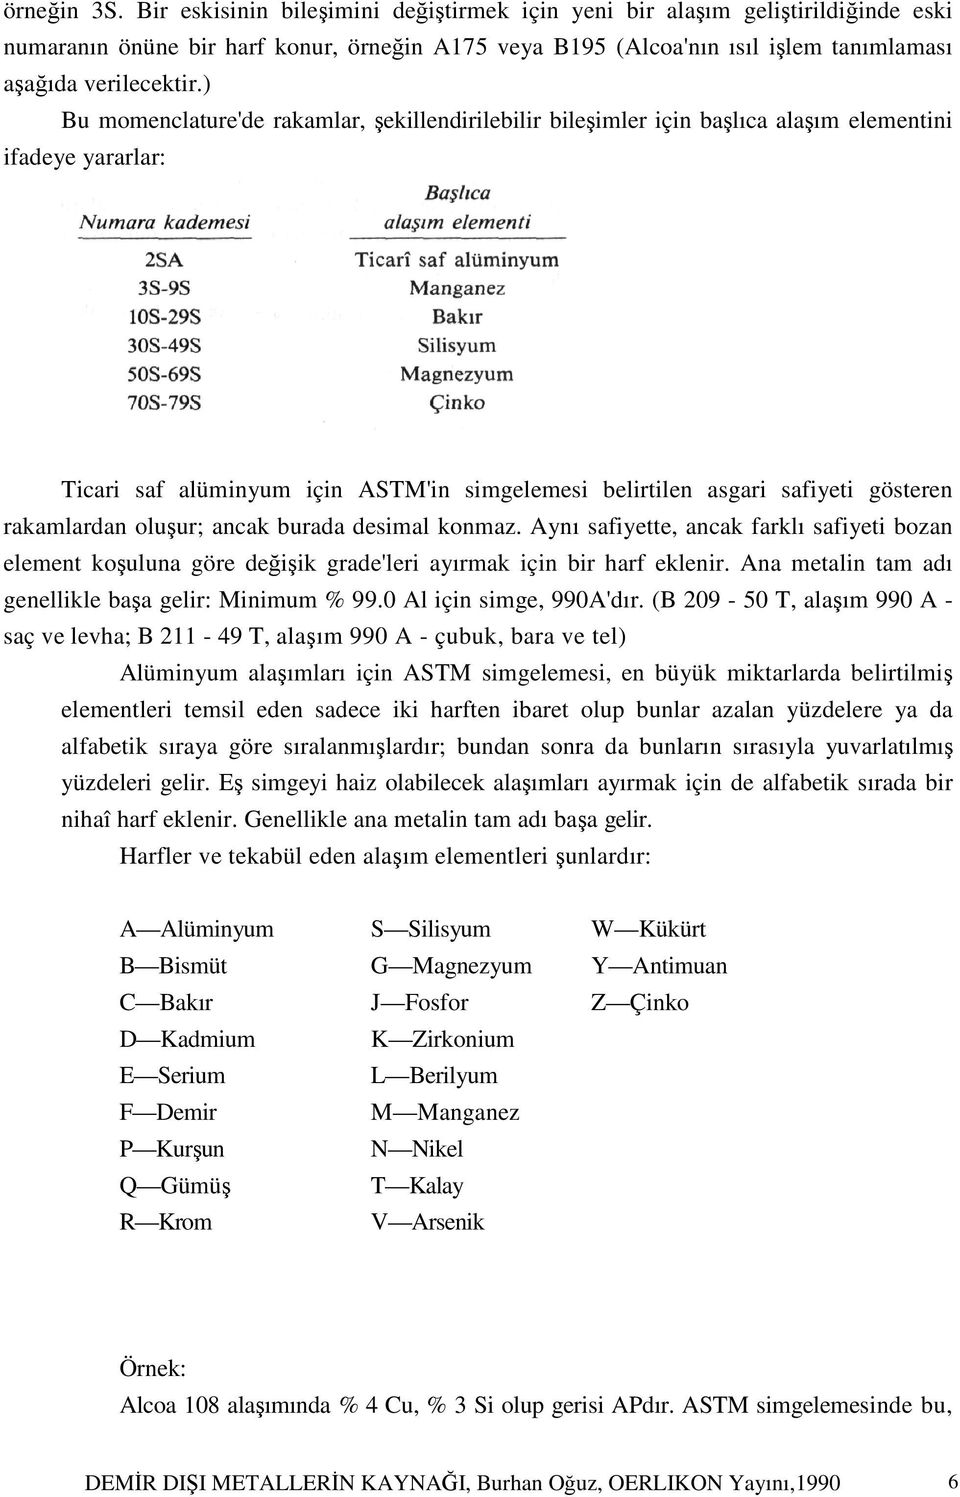 ) Bu momenclature'de rakamlar, şekillendirilebilir bileşimler için başlıca alaşım elementini ifadeye yararlar: Ticari saf alüminyum için ASTM'in simgelemesi belirtilen asgari safiyeti gösteren